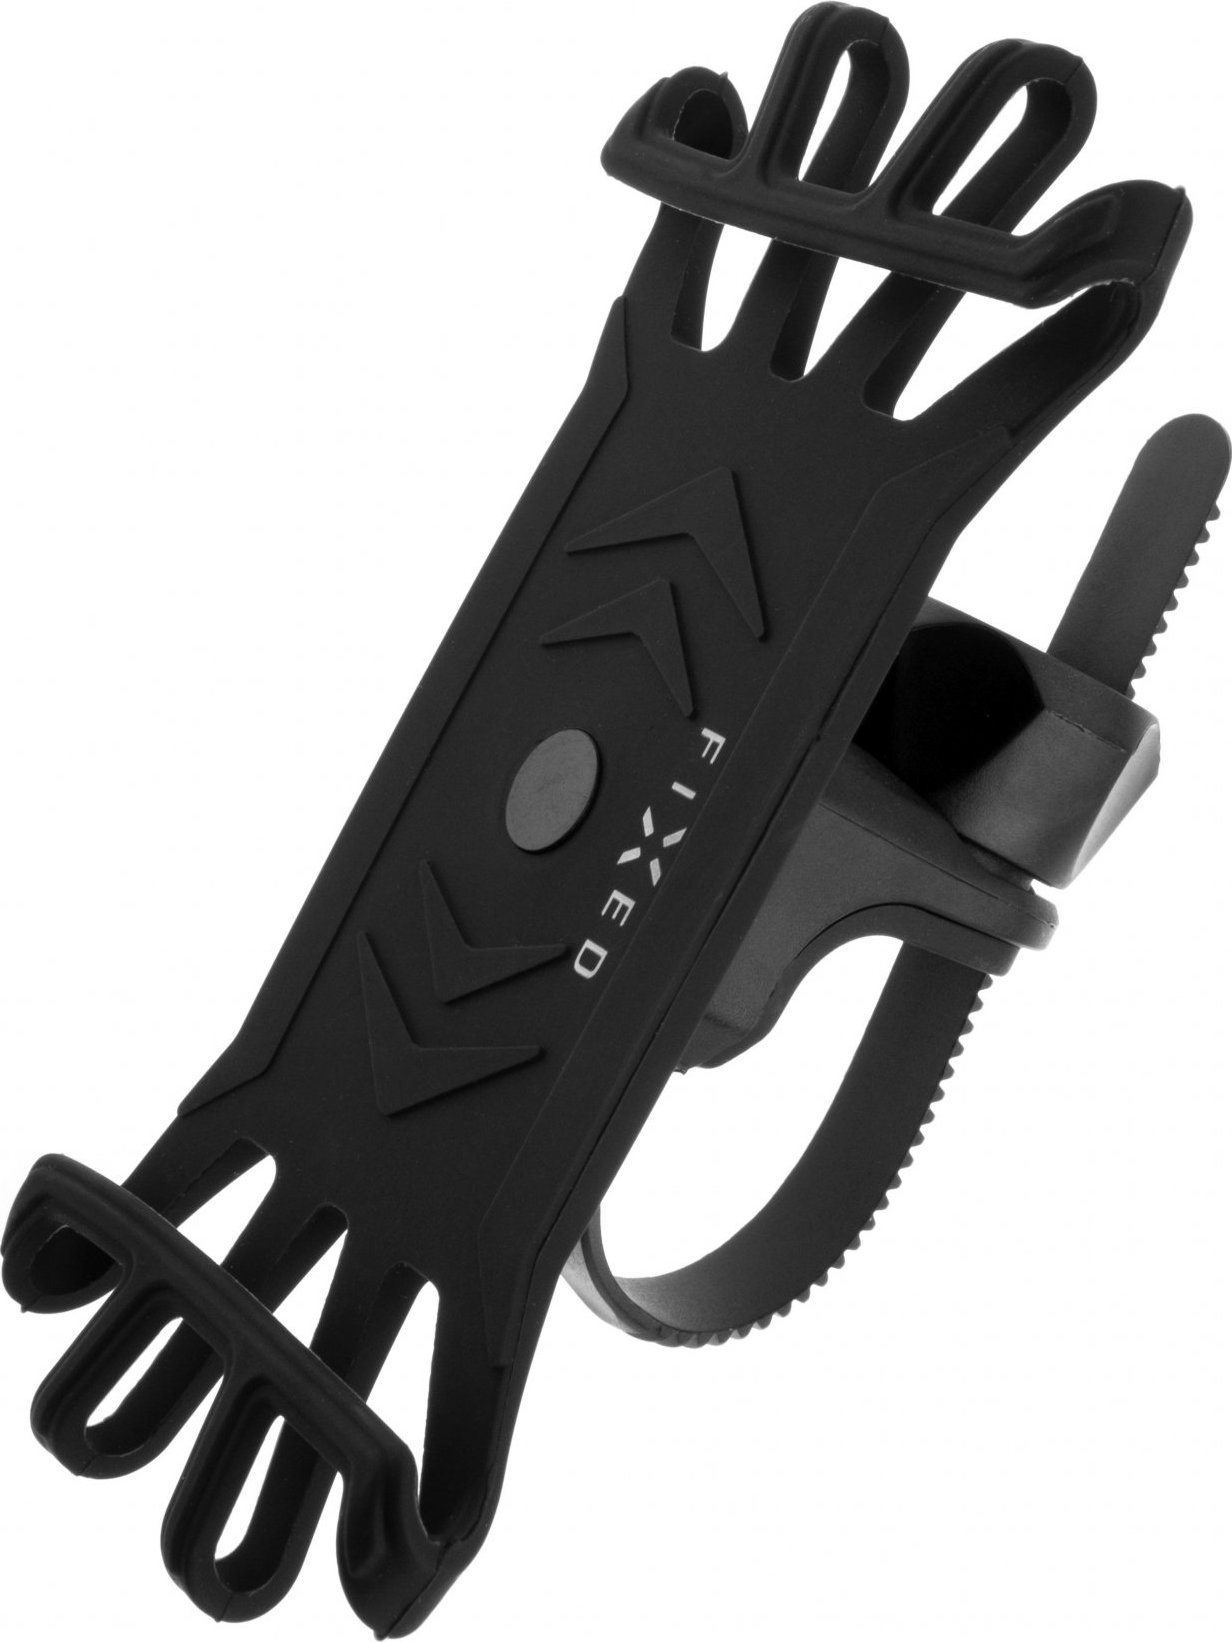 Silikonový držák mobilního telefonu na kolo FIXED Bikee, černý